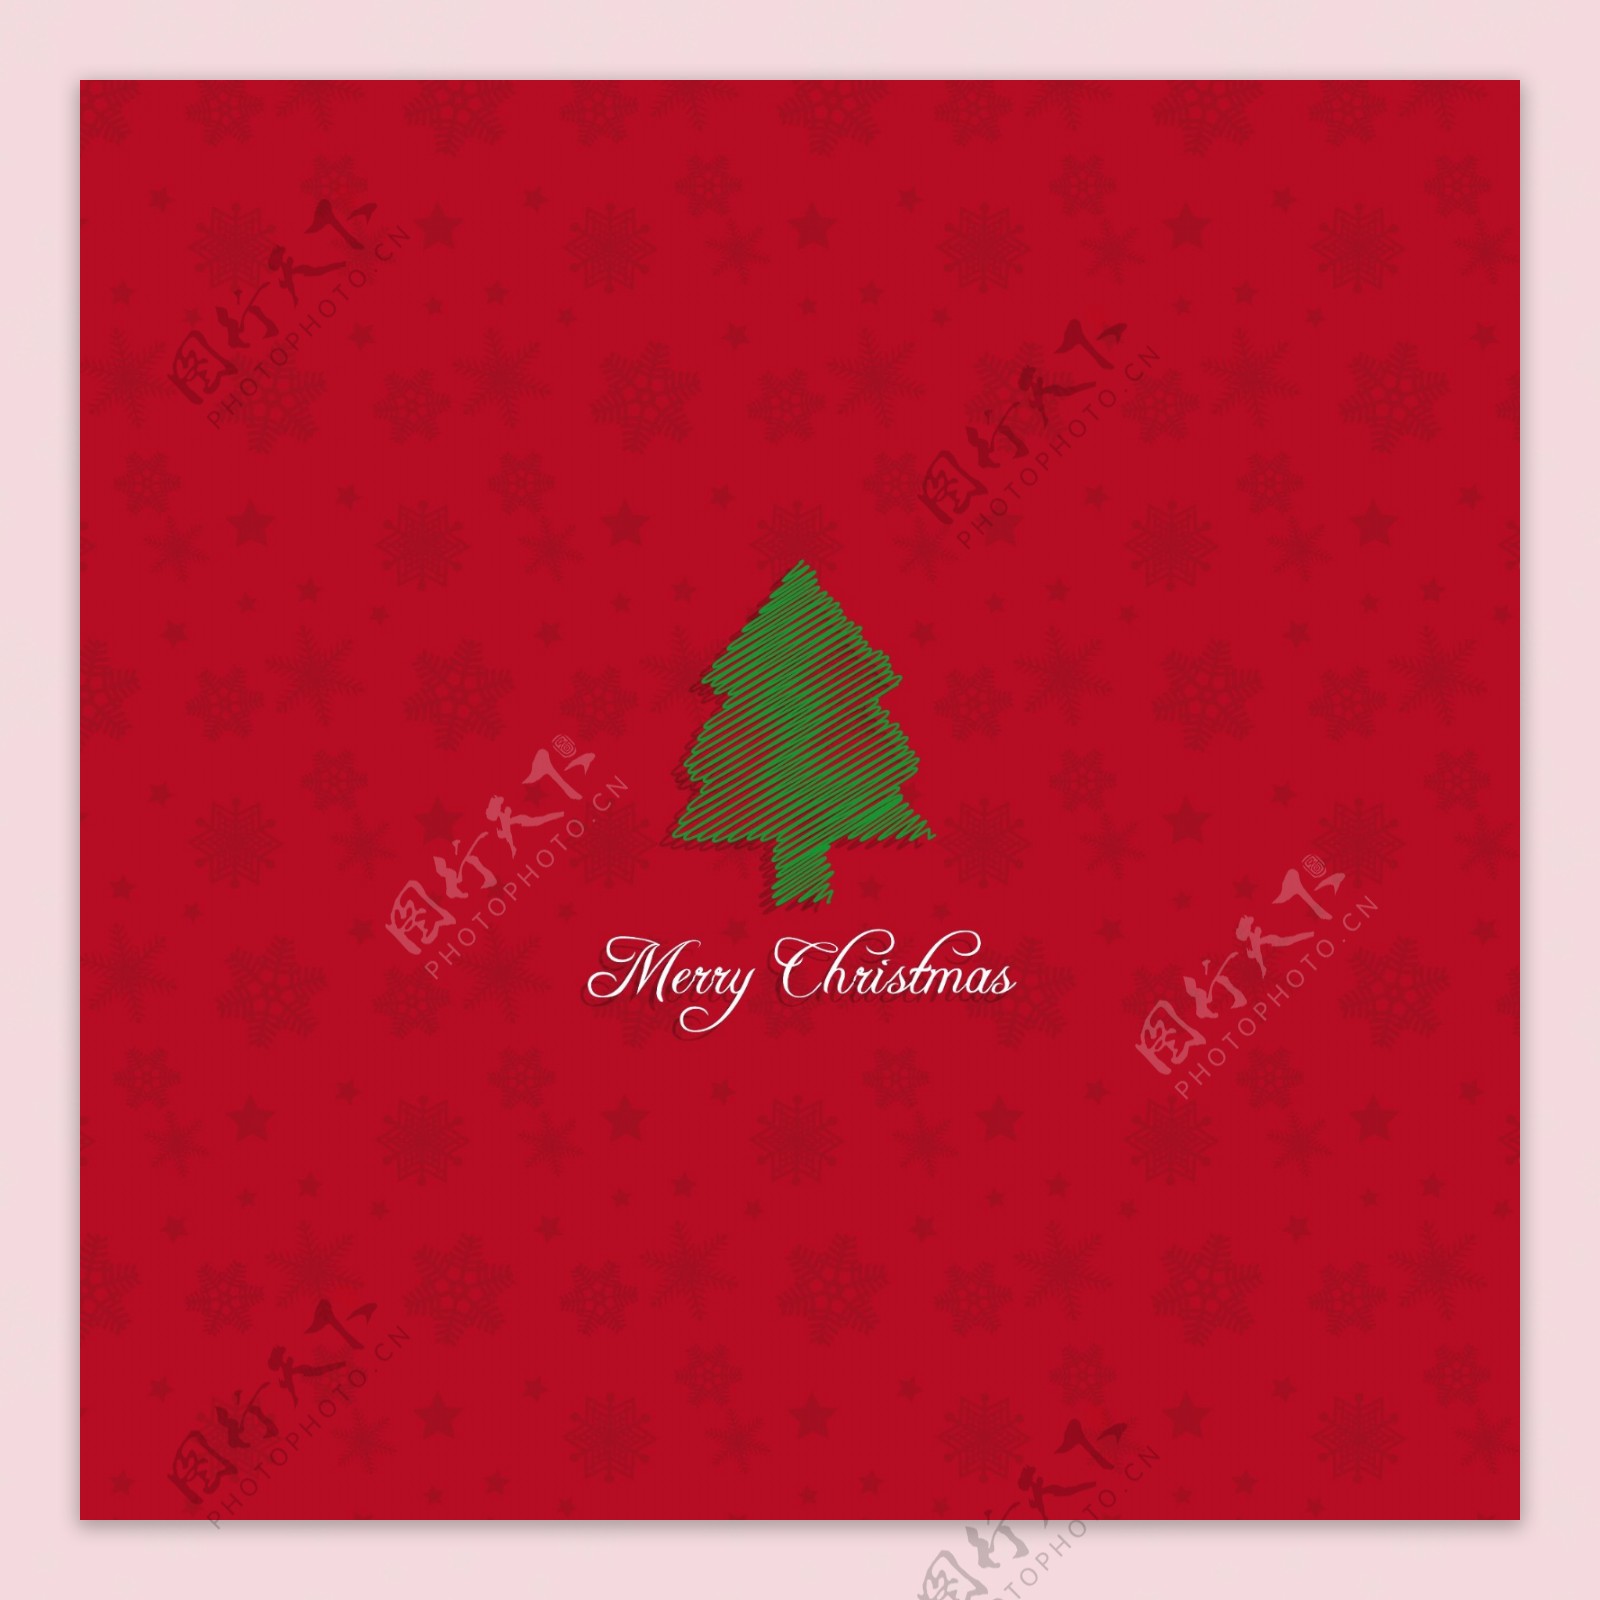 一个红色的背景上手绘的圣诞树